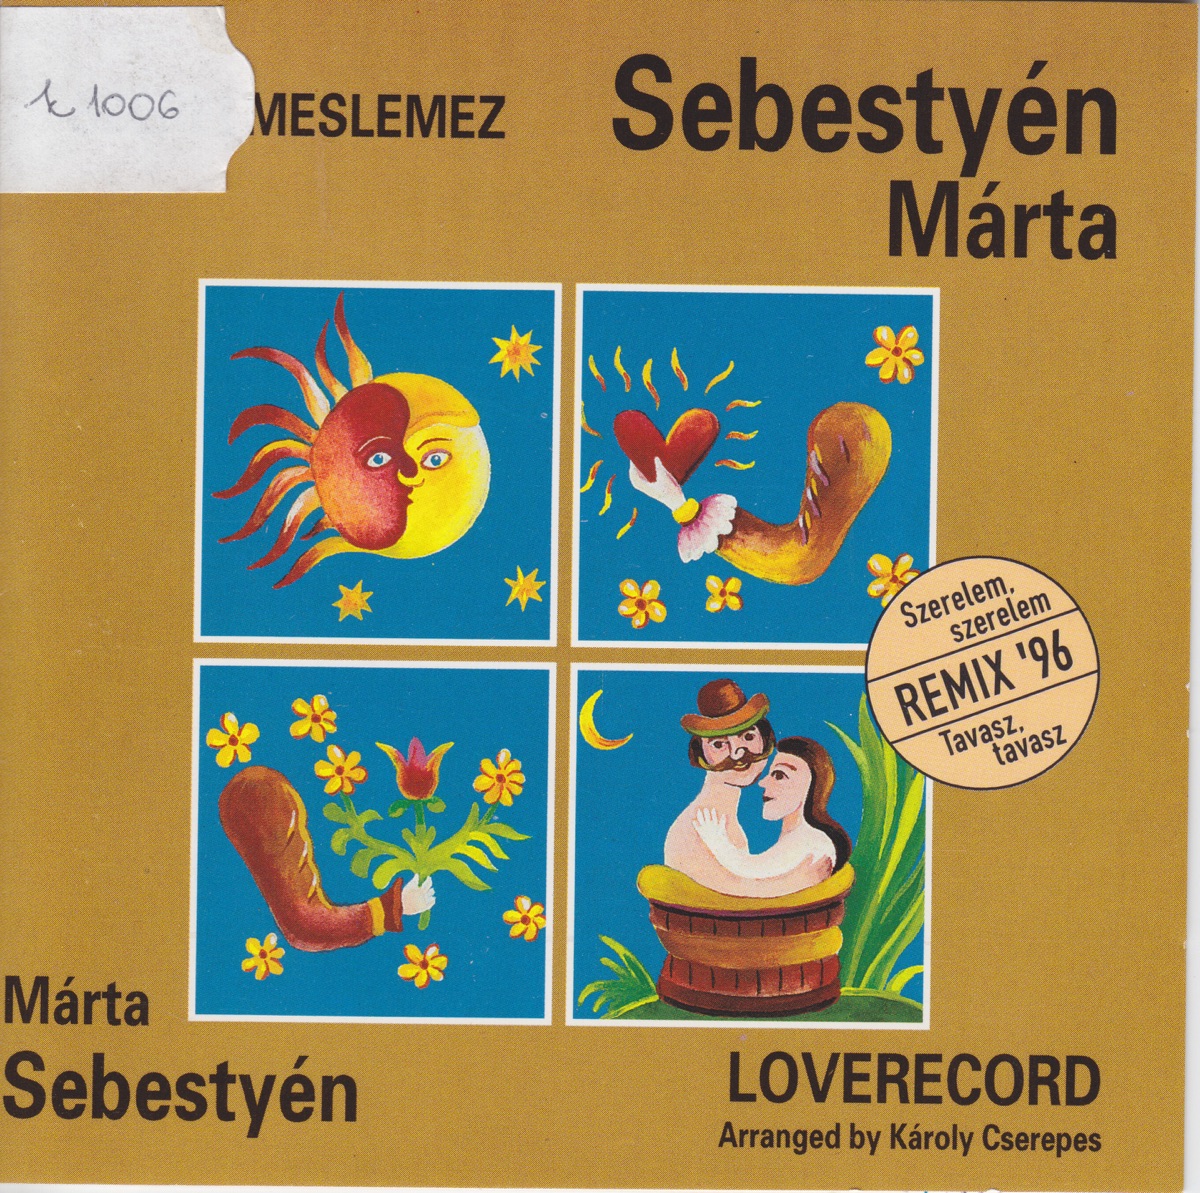 Szerelmeslemez - Loverecord - Album by Márta Sebestyén - Apple Music